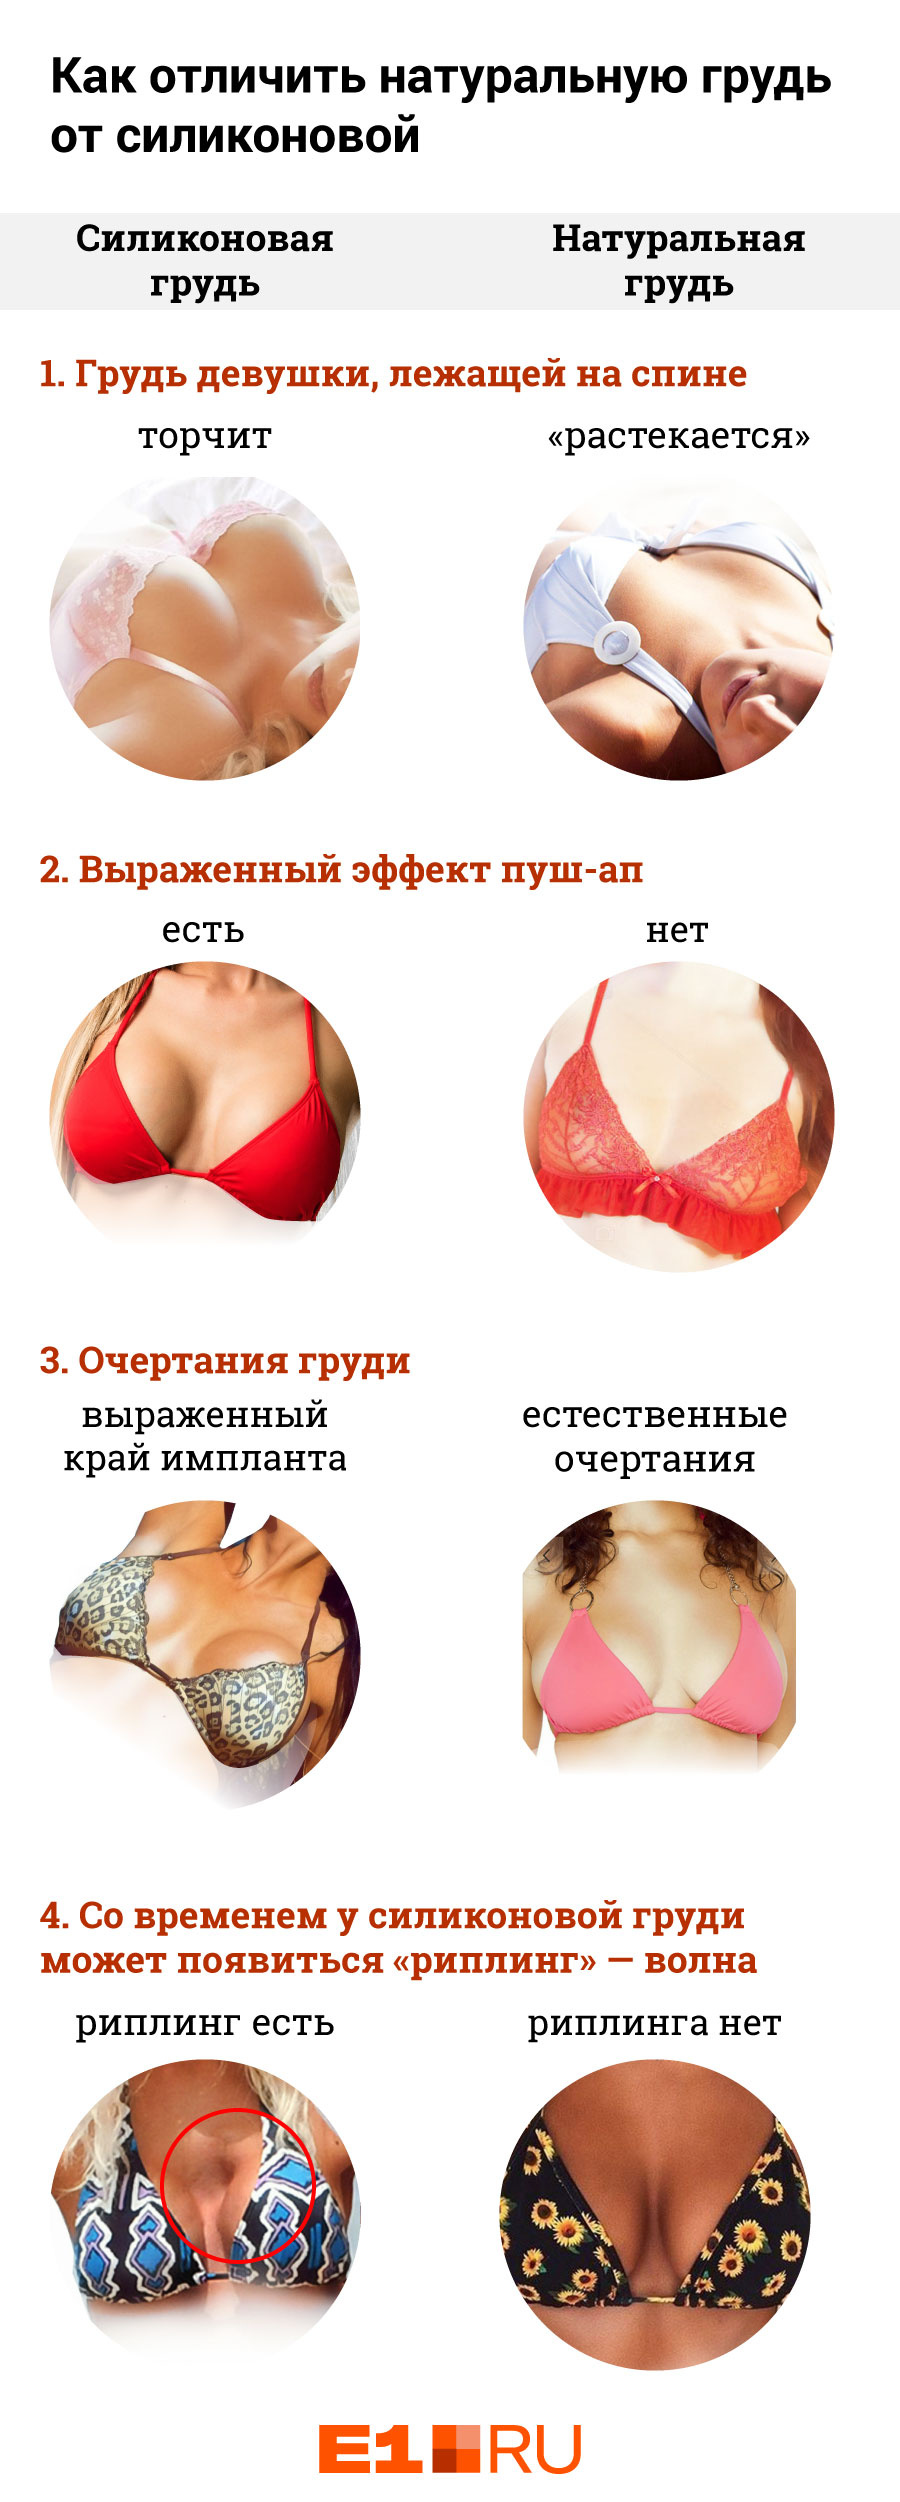 В Украине зарегистрировали рекордно большая женская грудь (ФОТО)